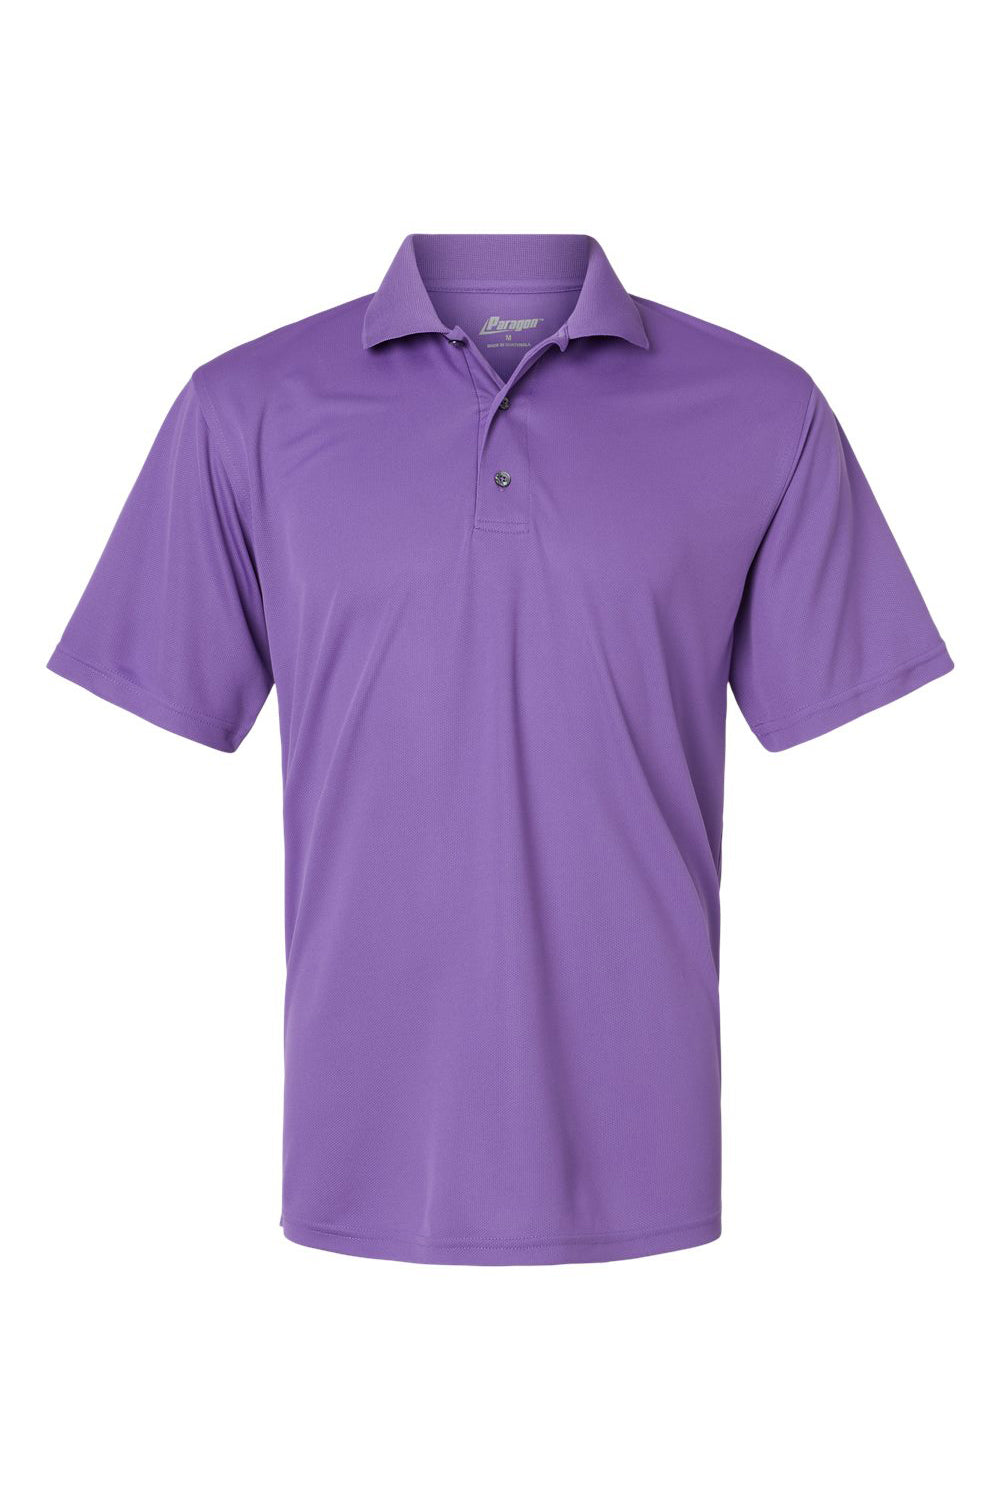 Paragon 100 Mens Saratoga Performance Mini Mesh Short Sleeve Polo Shirt Grape Purple Flat Front